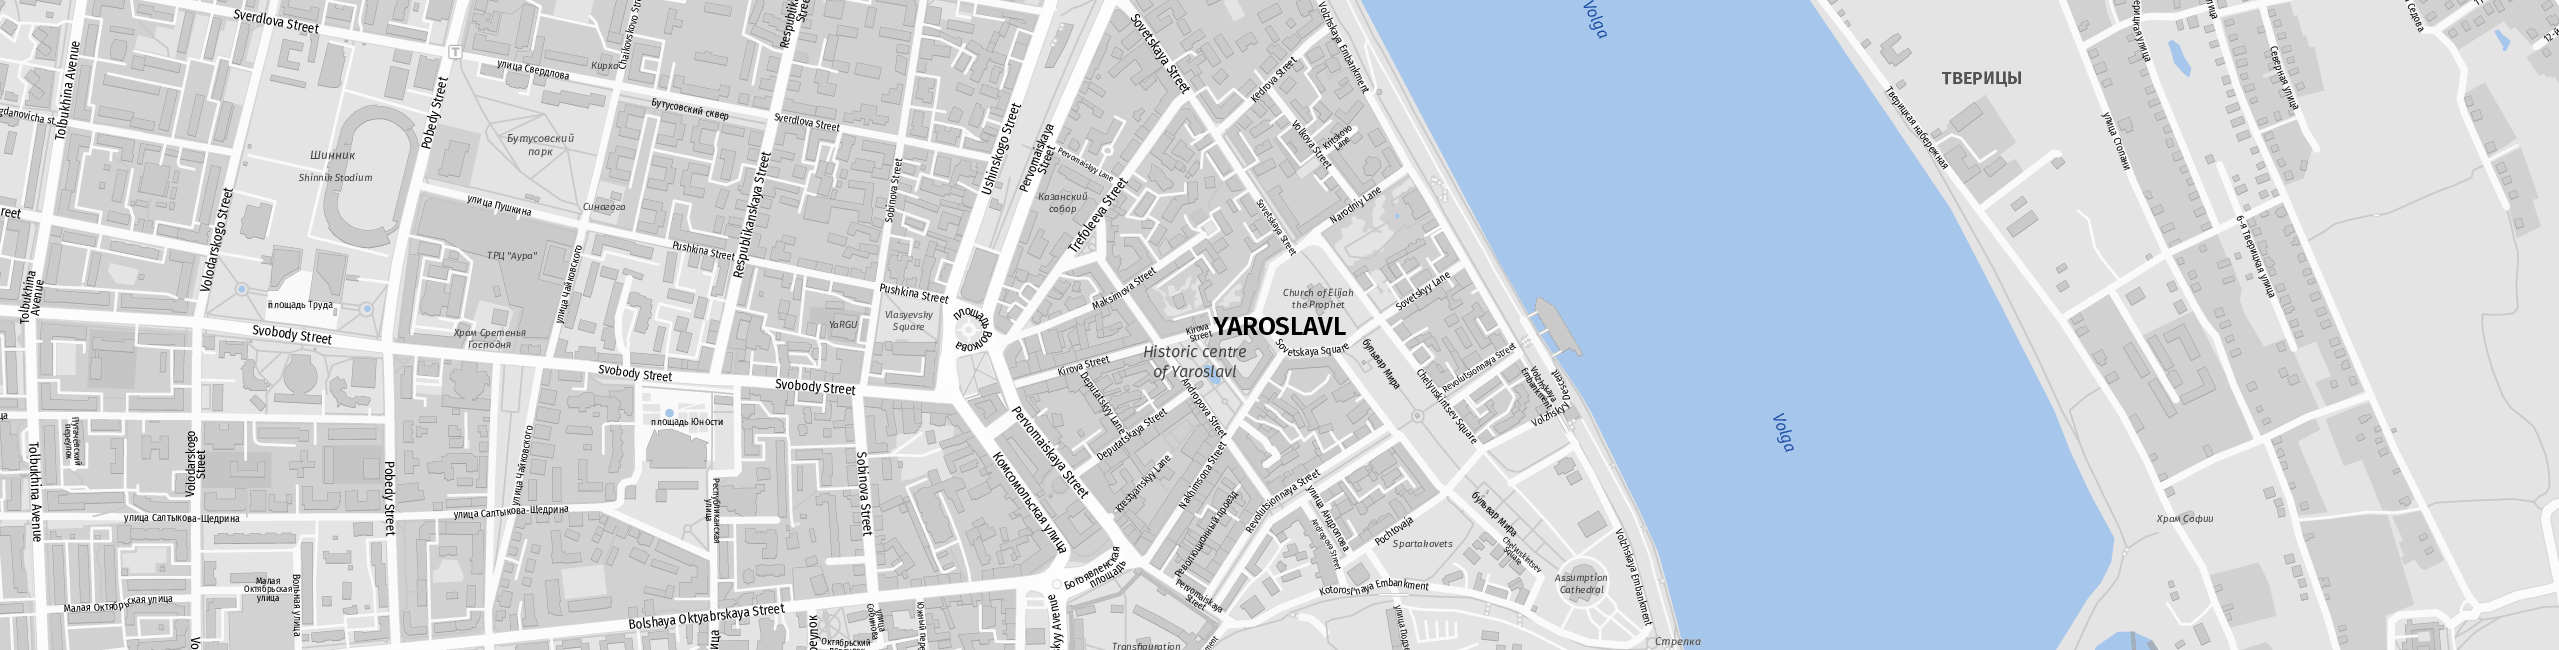 Stadtplan Jaroslawl zum Downloaden.